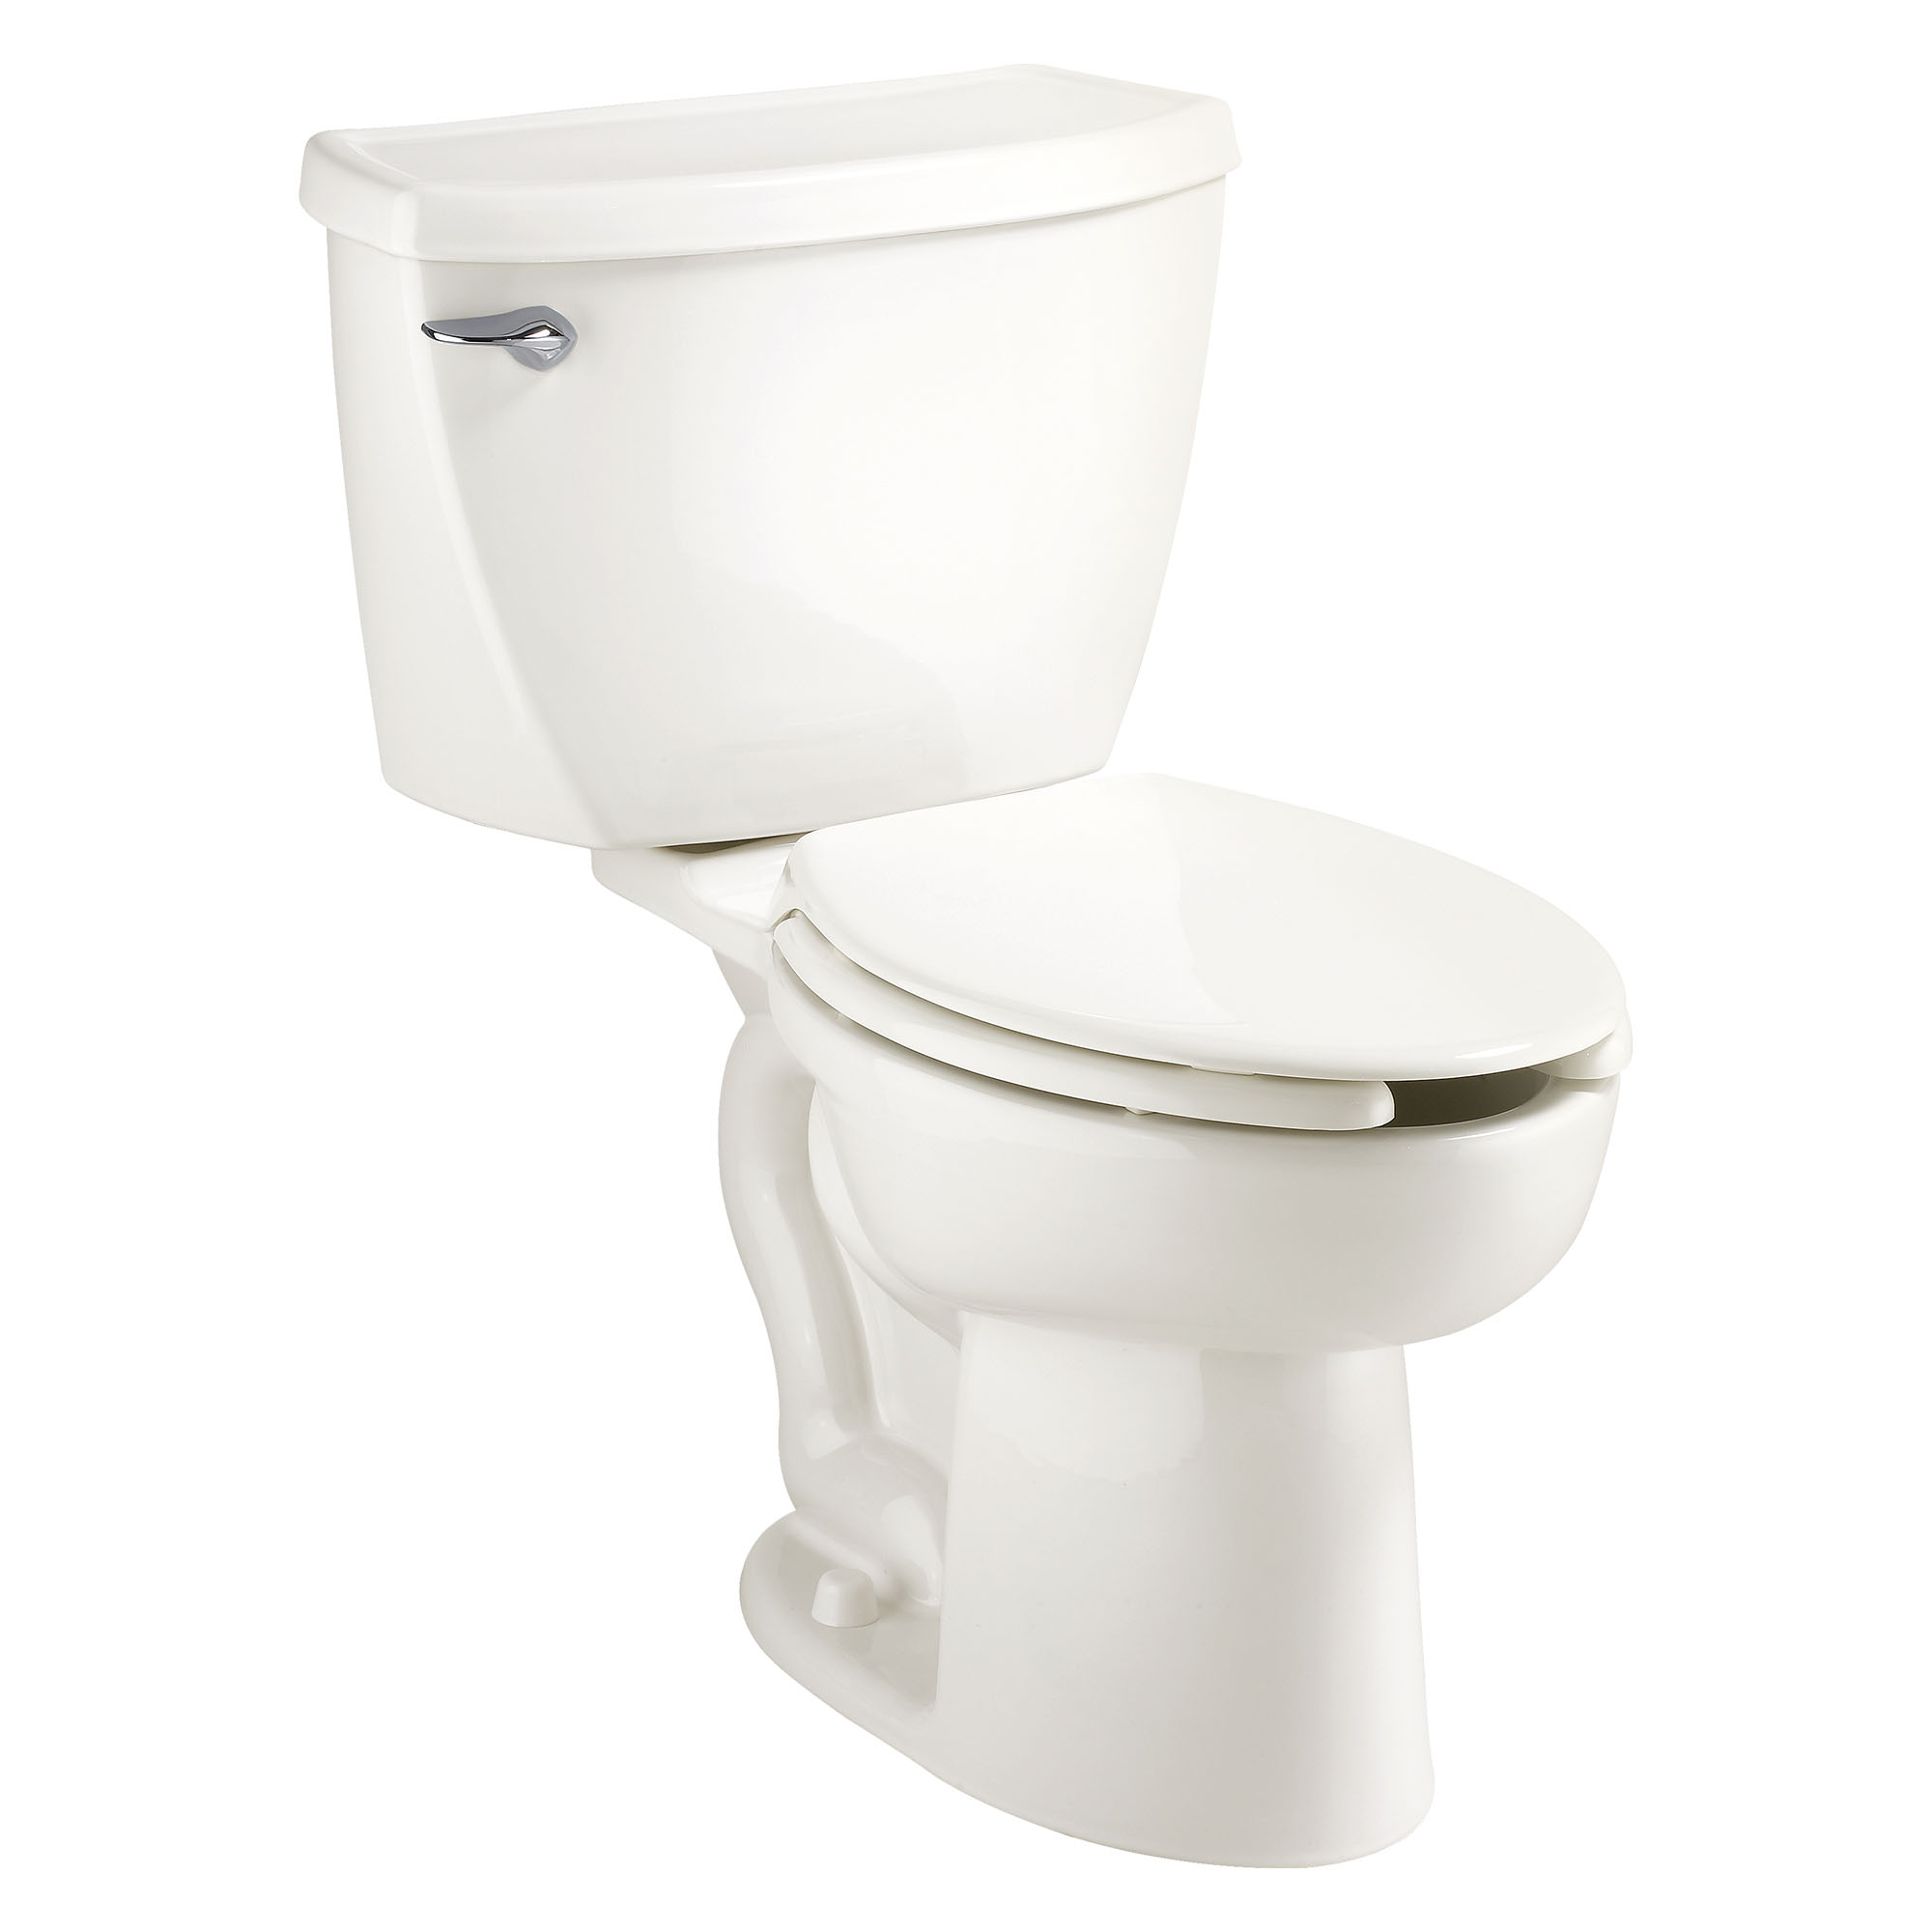 Cadet MC - Toilette allongée deux pièces avec EverClean MC et pression assistée, 1,6 gpc/6,0 lpc